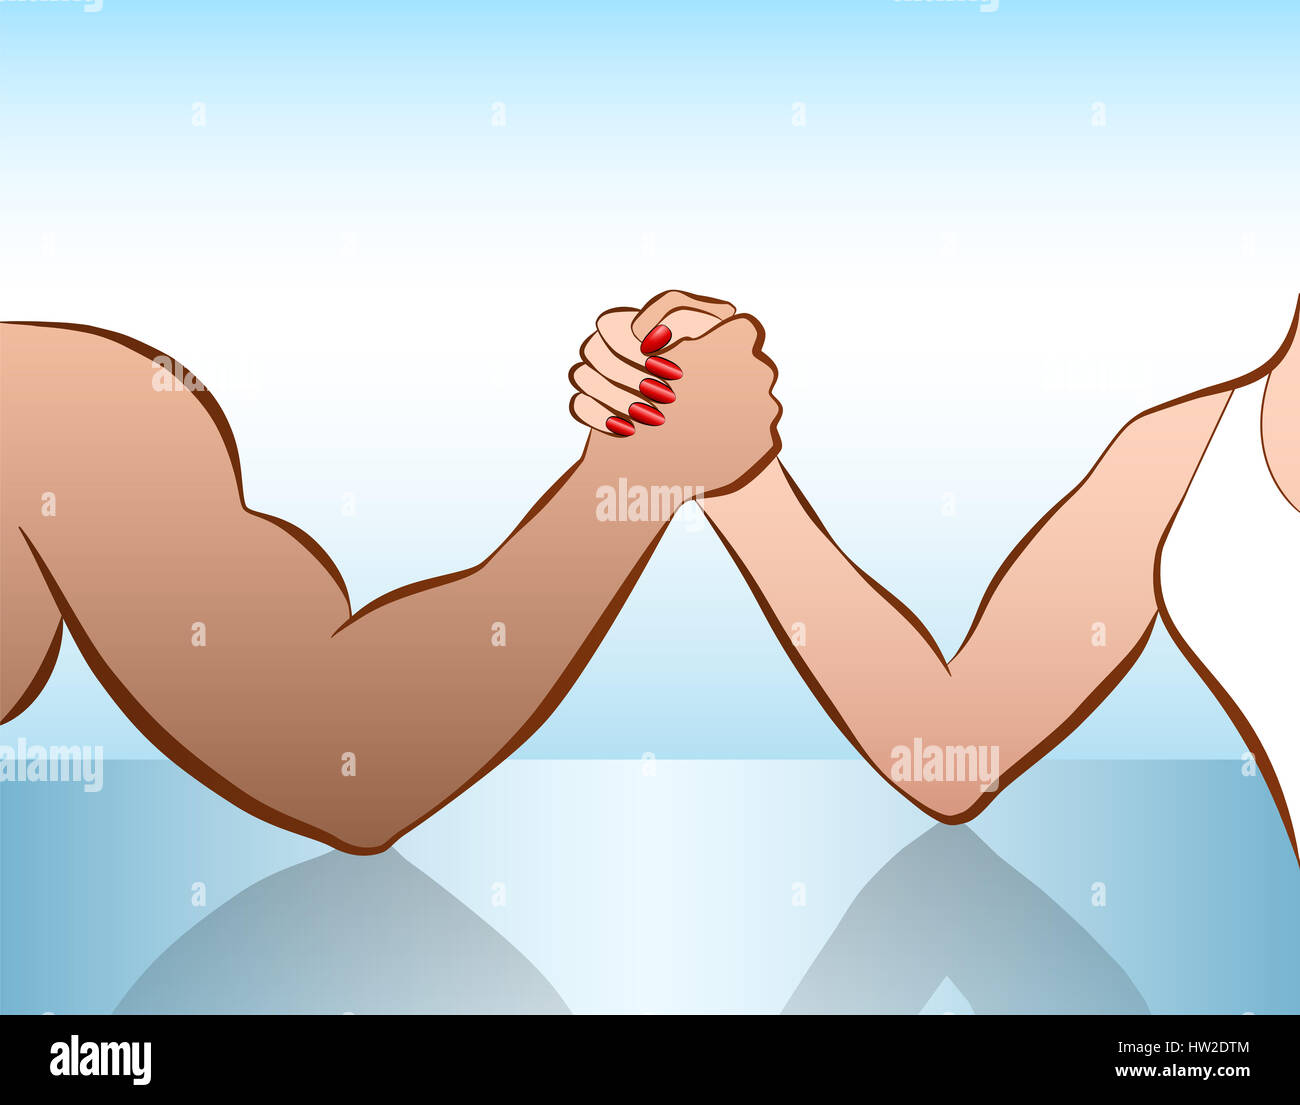 L'homme et la femme des bras de fer en tant que symbole de bataille des sexes ou l'égalité lutte. Illustration sur fond blanc. Banque D'Images